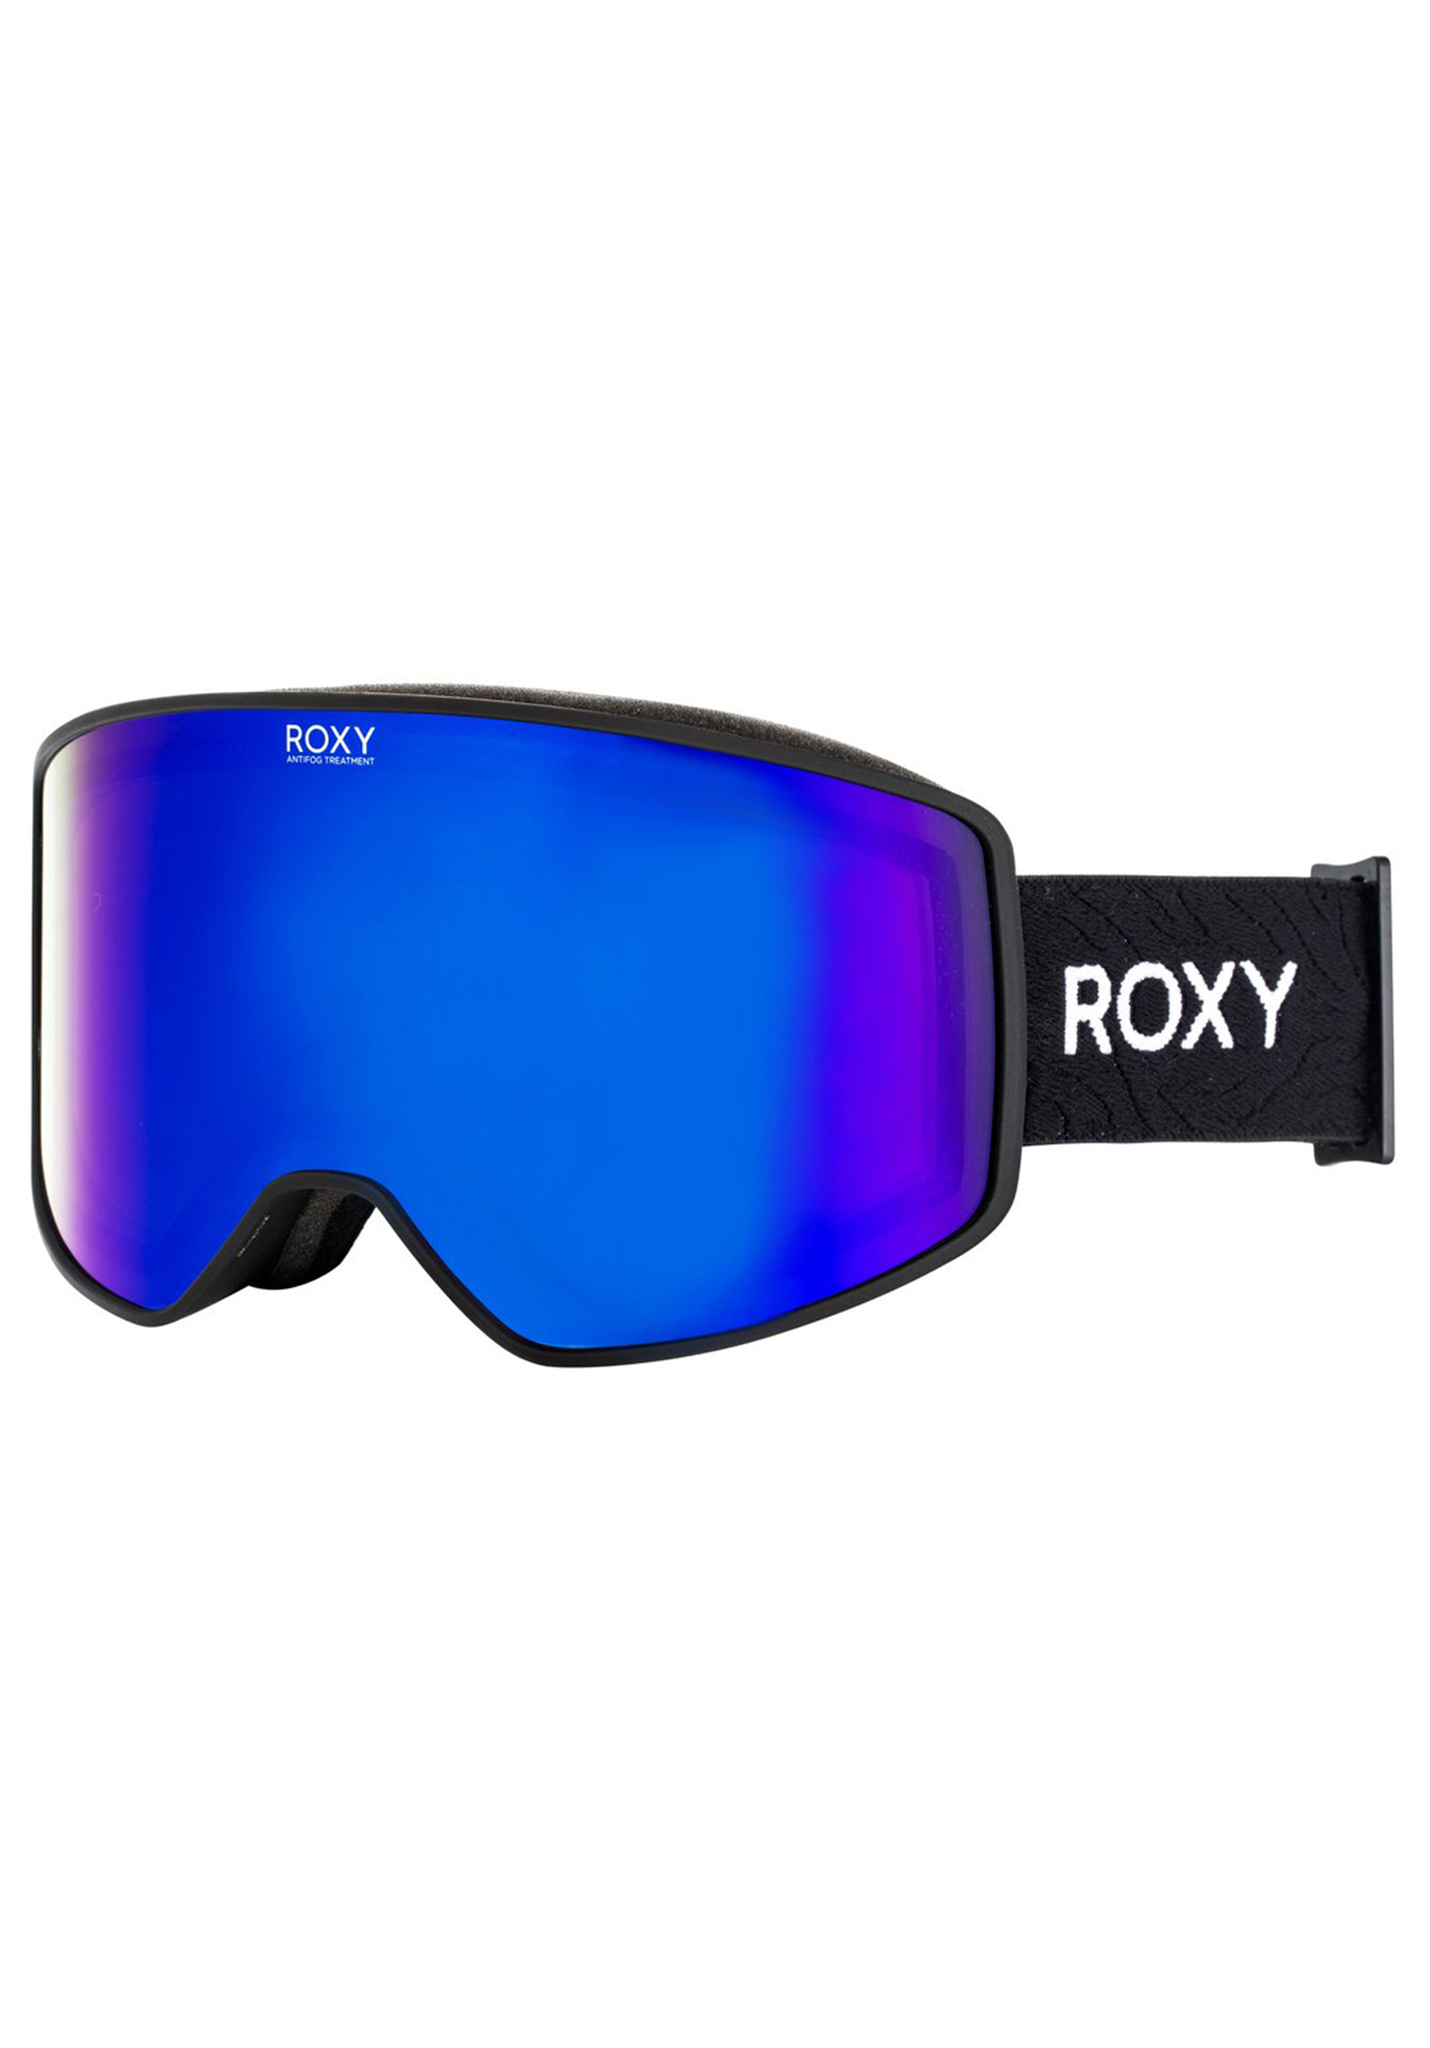 Roxy Storm Snowboardbrillen true black One Size